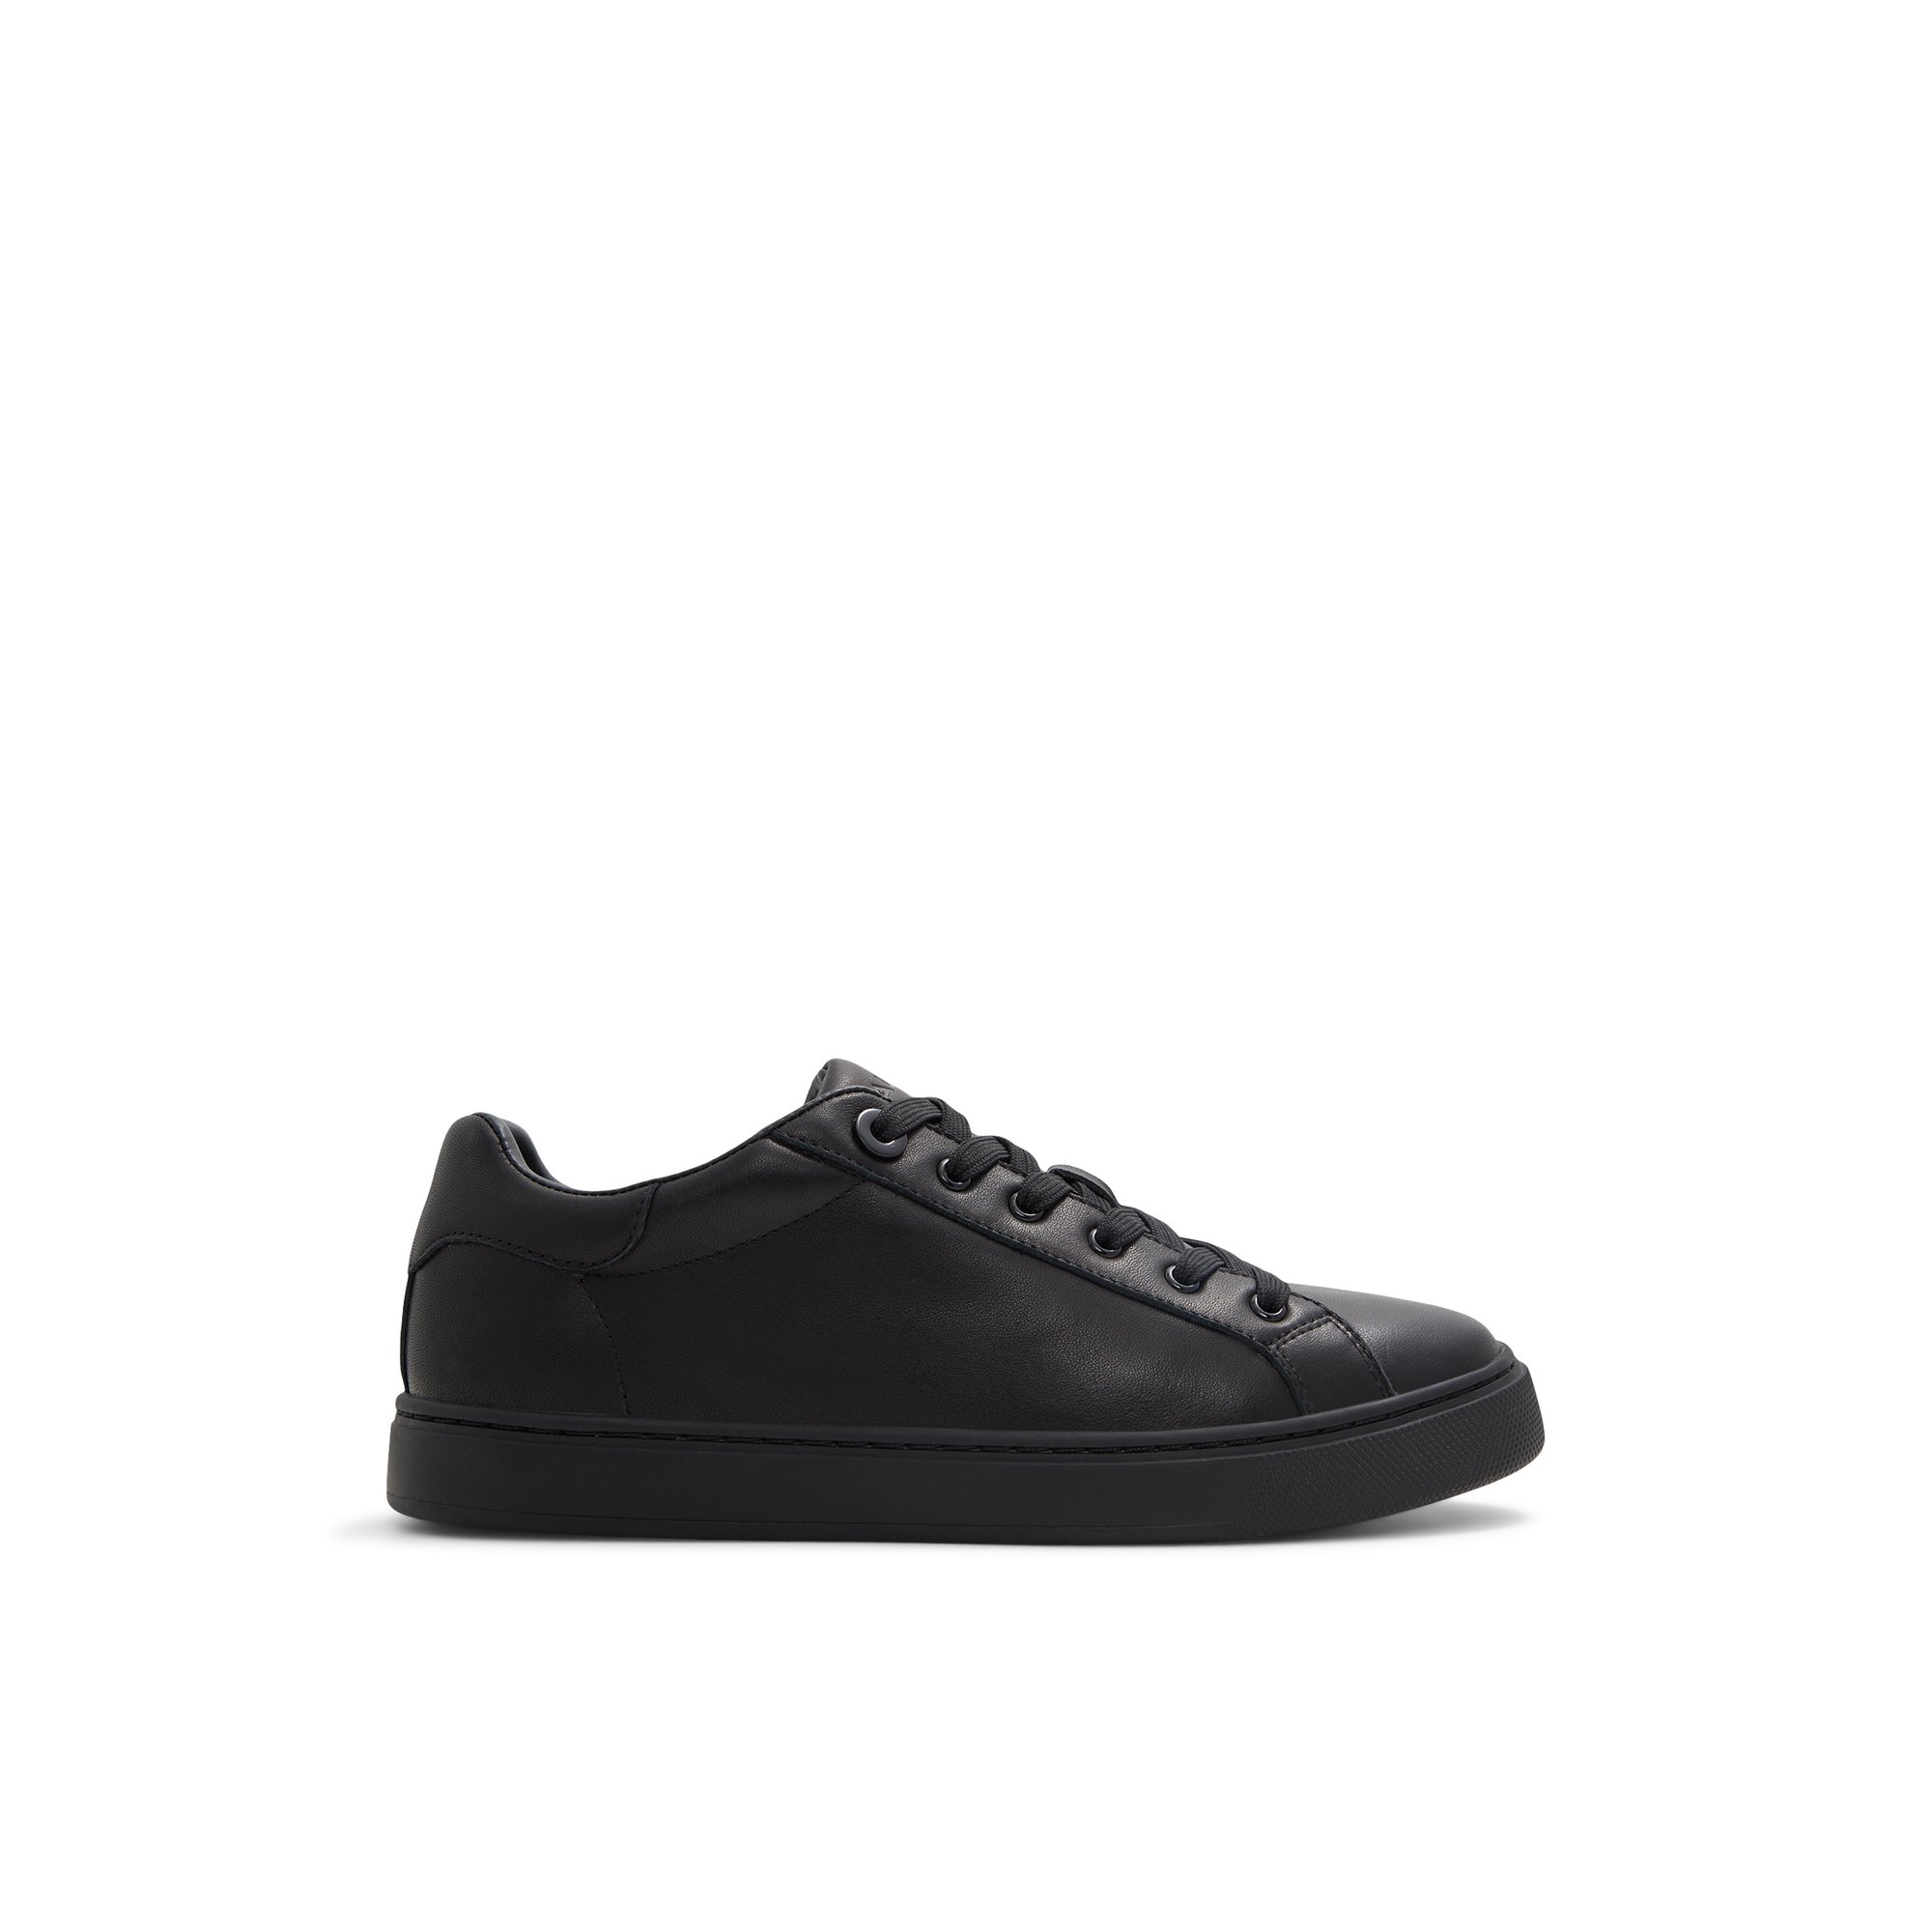 ALDO Woolly - Women's Low Top Sneaker Sneakers - Black